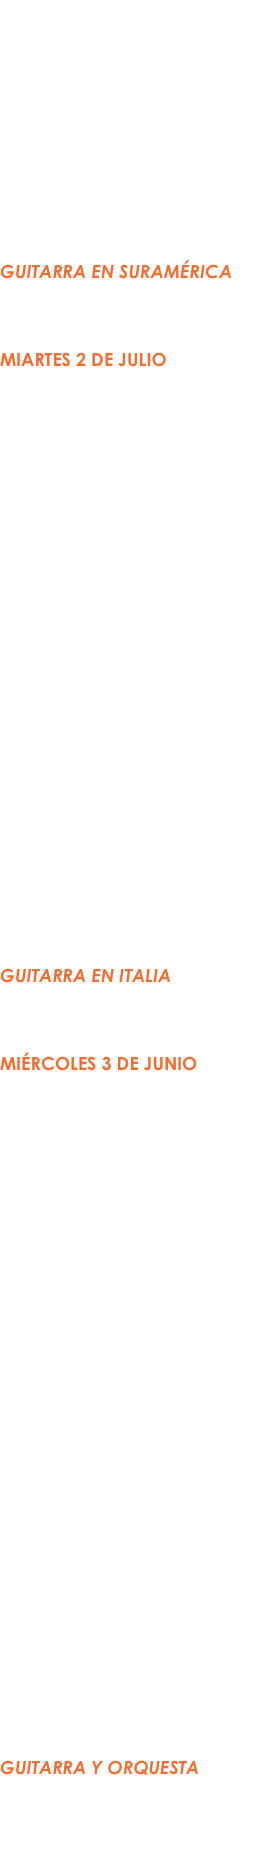 Clase Maestra
(Auditorio)
2:00-5:00 PM
Xavier Jara (Estados Unidos)

Orquesta de Guitarras
(Salón de danza)
2:00-7:00 PM
Nadia Borislova (directora)

Concierto (Auditorio)
7:30 PM
GUITARRA EN SURAMÉRICA
Daniel Morgade (Uruguay)
Palos y Cuerdas (Colombia)

MIARTES 2 DE JULIO
Taller de Técnica
(Salón de danza)
9:00-11:00 PM
Xavier Jara (Estados Unidos)

Clase Maestra
(Auditorio) 
9:00-12:00 PM
Daniel Morgade (Uruguay)

Taller de Mandolina
(Salón de danza)
11:00-12:00 PM
Carlo Aonzo (Italia)

Clase Maestra
(Auditorio) 
2:00-5:00 PM
Isaac Bustos (Nicaragua)

Orquesta de Guitarras
(Salón de danza)
2:00-7:00 PM
Nadia Borislova (directora)

Concierto (Auditorio)
7:30 PM
Guitarra EN ITALIA
Giordano Passini (Italia)
Aonzo/Bernardi Dúo (Italia)

MIÉRCOLES 3 DE JUNIO
Taller de Técnica
(Salón de danza)
9:00-12:00 PM
Daniel Morgade (Uruguay)

Clase Maestra
(Auditorio) 
9:00-12:00 PM
Daniel Saboya (Colombia)

Conversatorio sobre Composición
(Auditorio)
12:00-1:00 PM
Cudberto Córdova (México)
Nadia Borsilova (México/Rusia) Jorge Bennett (Panamá) 
Emiliano Pardo-Tristán (Panamá)

Clase Maestra
(Salón de danza)
2:00-5:00 PM
Lorenzo Bernardi (Italia)

Orquesta de Guitarras 
(Auditorio)
4:00-7:00 PM
Nadia Borislova (directora)

Concierto (Auditorio)
7:30 PM
Guitarra y ORQUESTA
Orquesta Internacional de Guitarras 
Nadia Borislova (directora)
Isaac Bustos (Nicaragua)